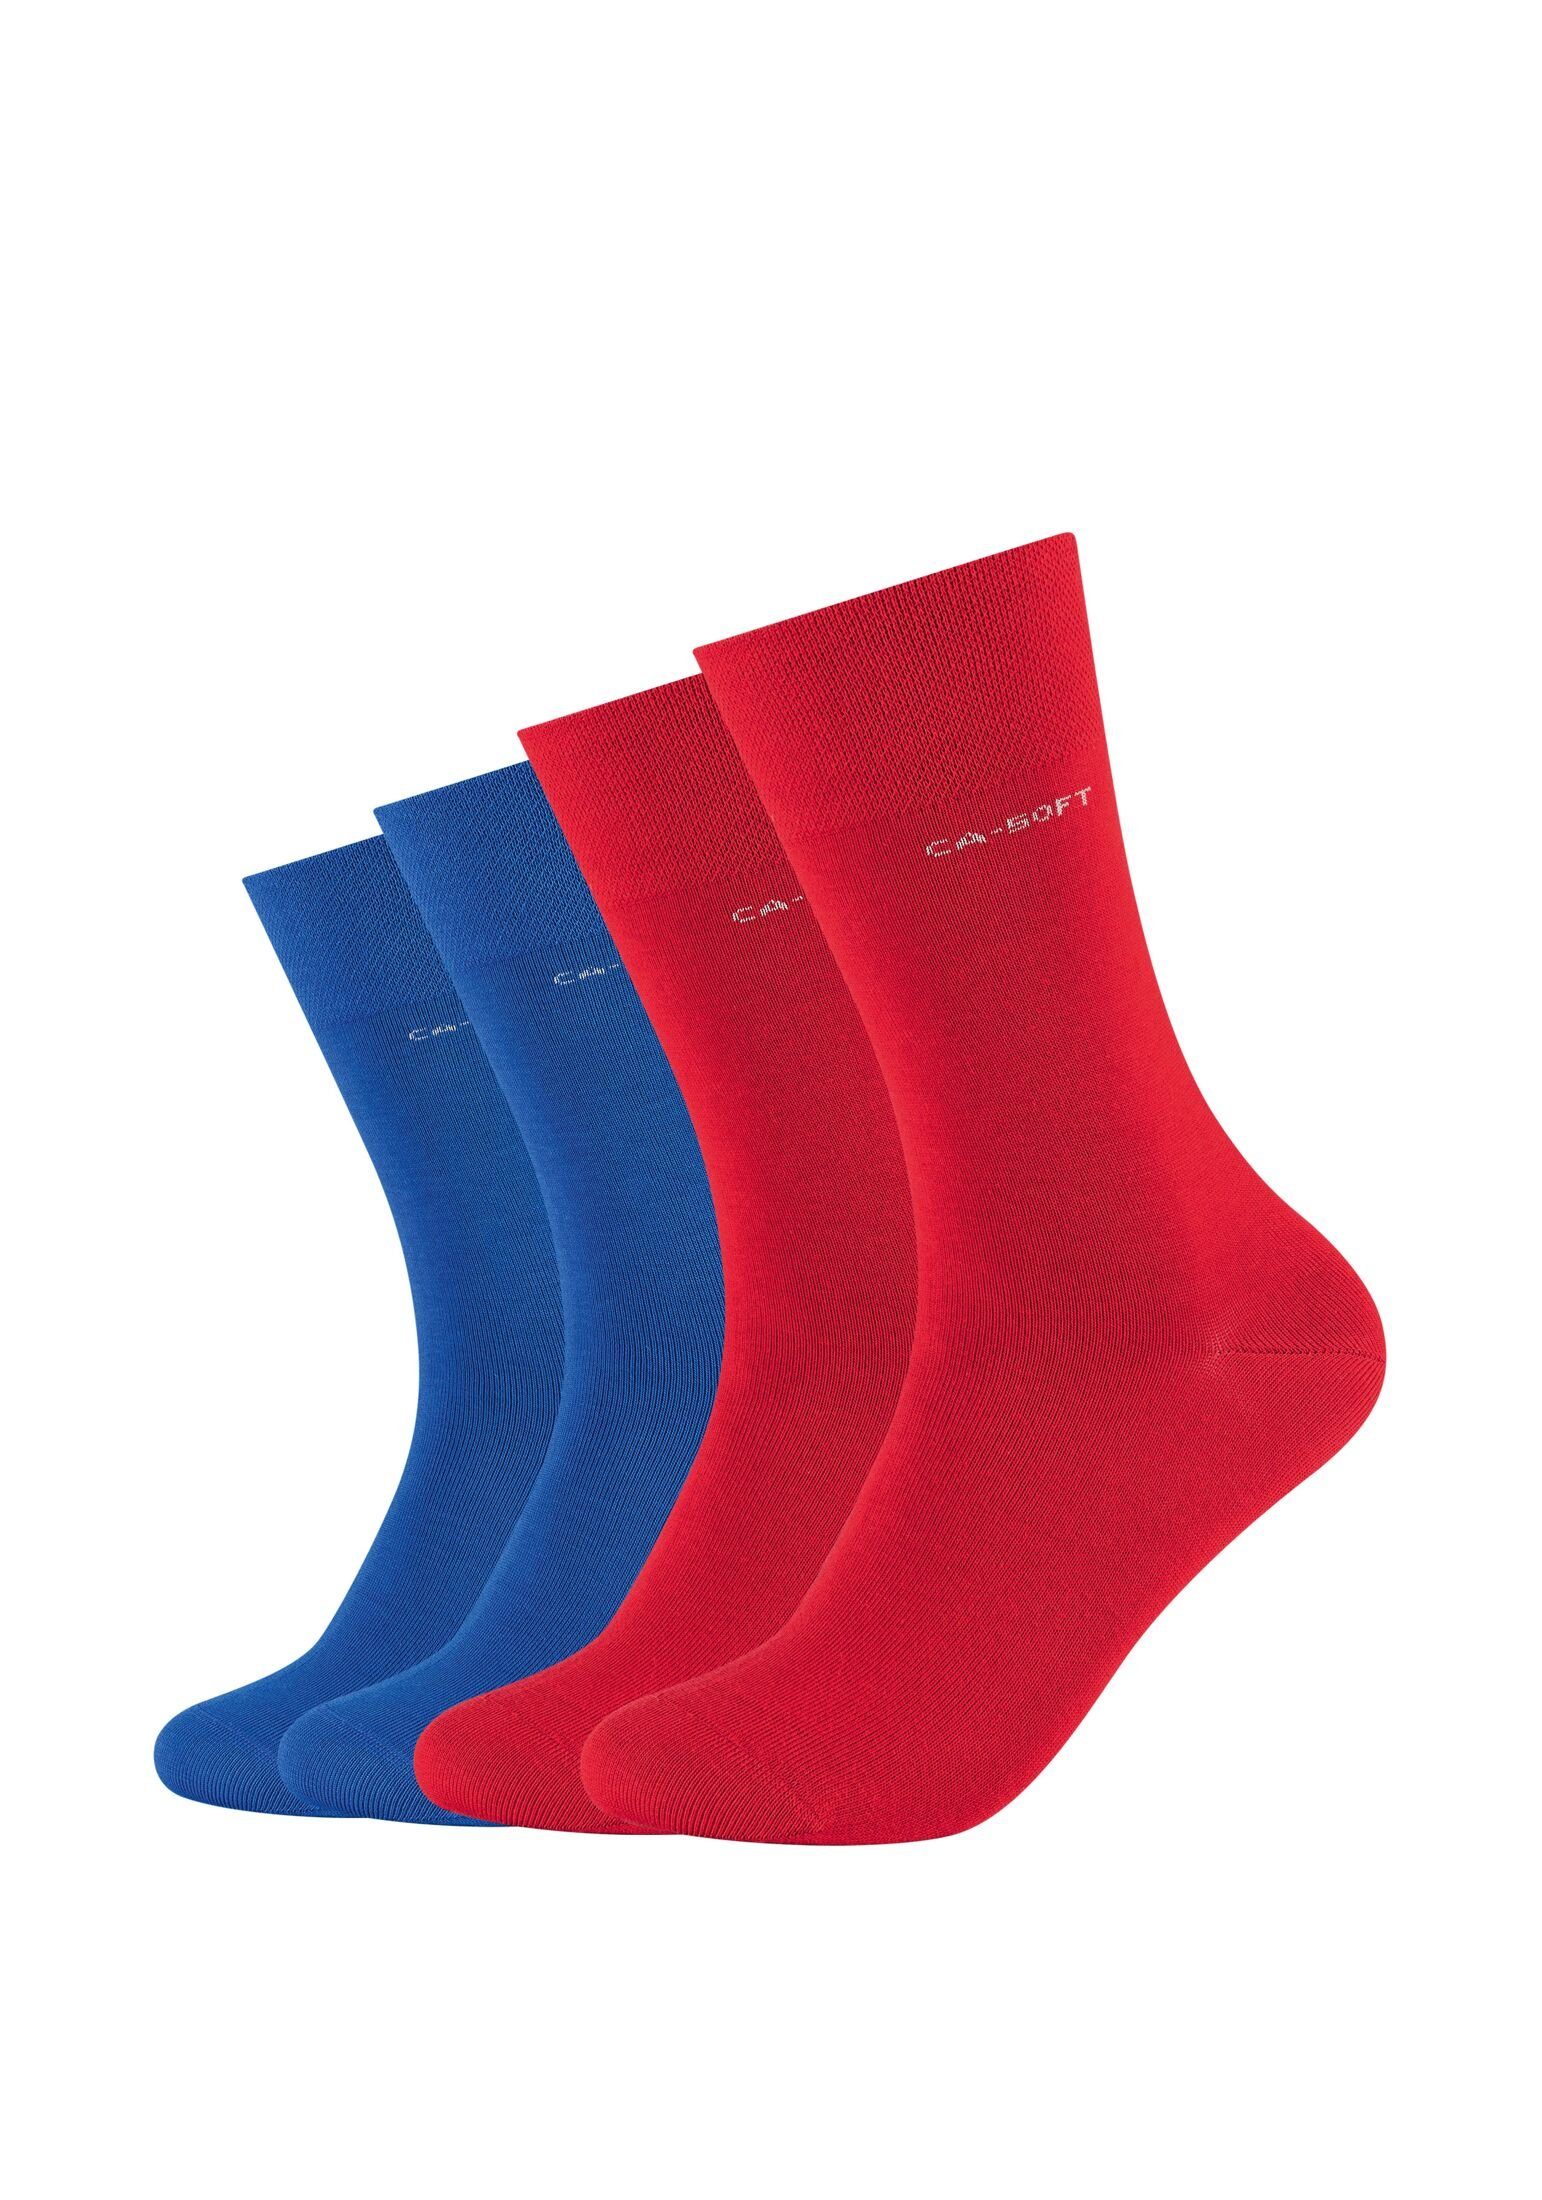 Businesssocken Camano für red und true Komfortbund Socken Socken Bequem Damen Herren